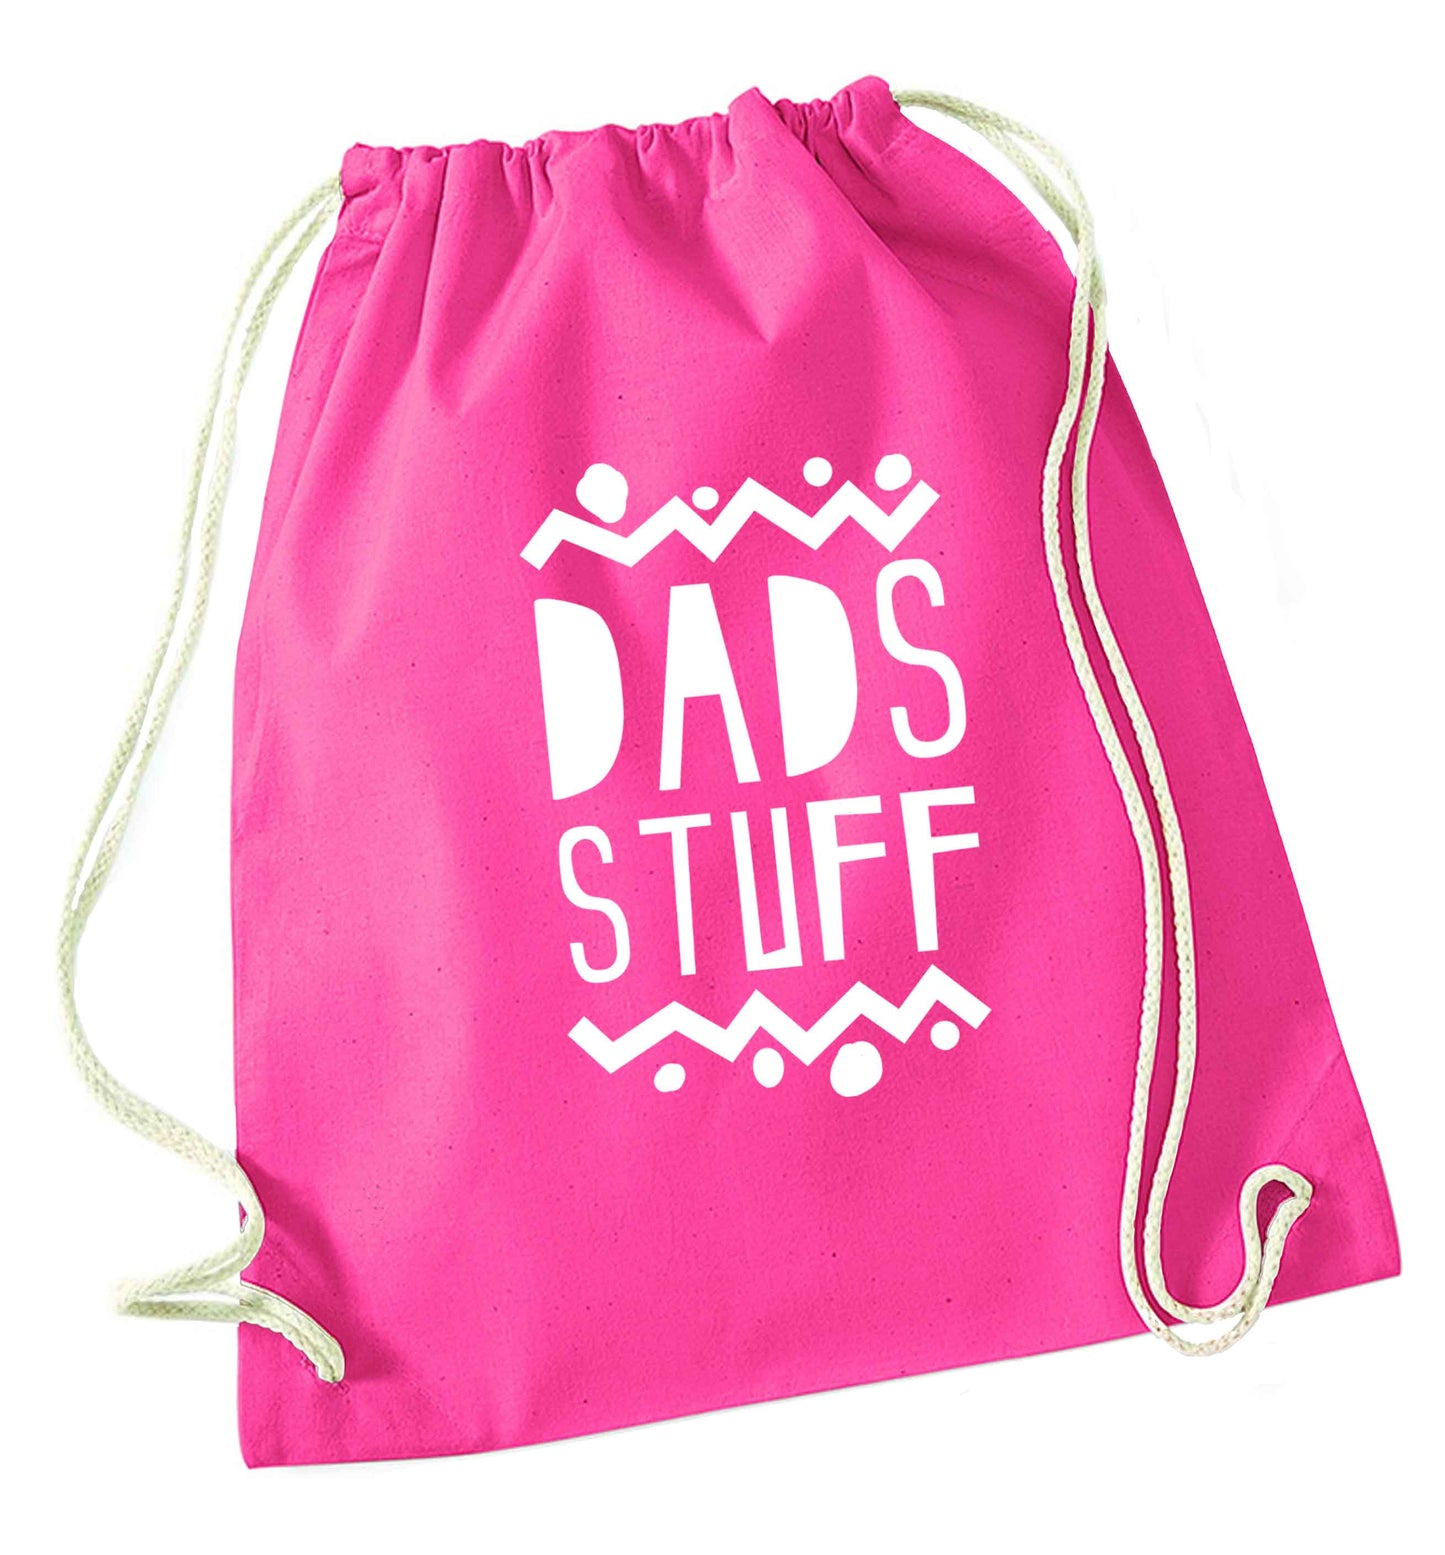 Dads stuff pink drawstring bag